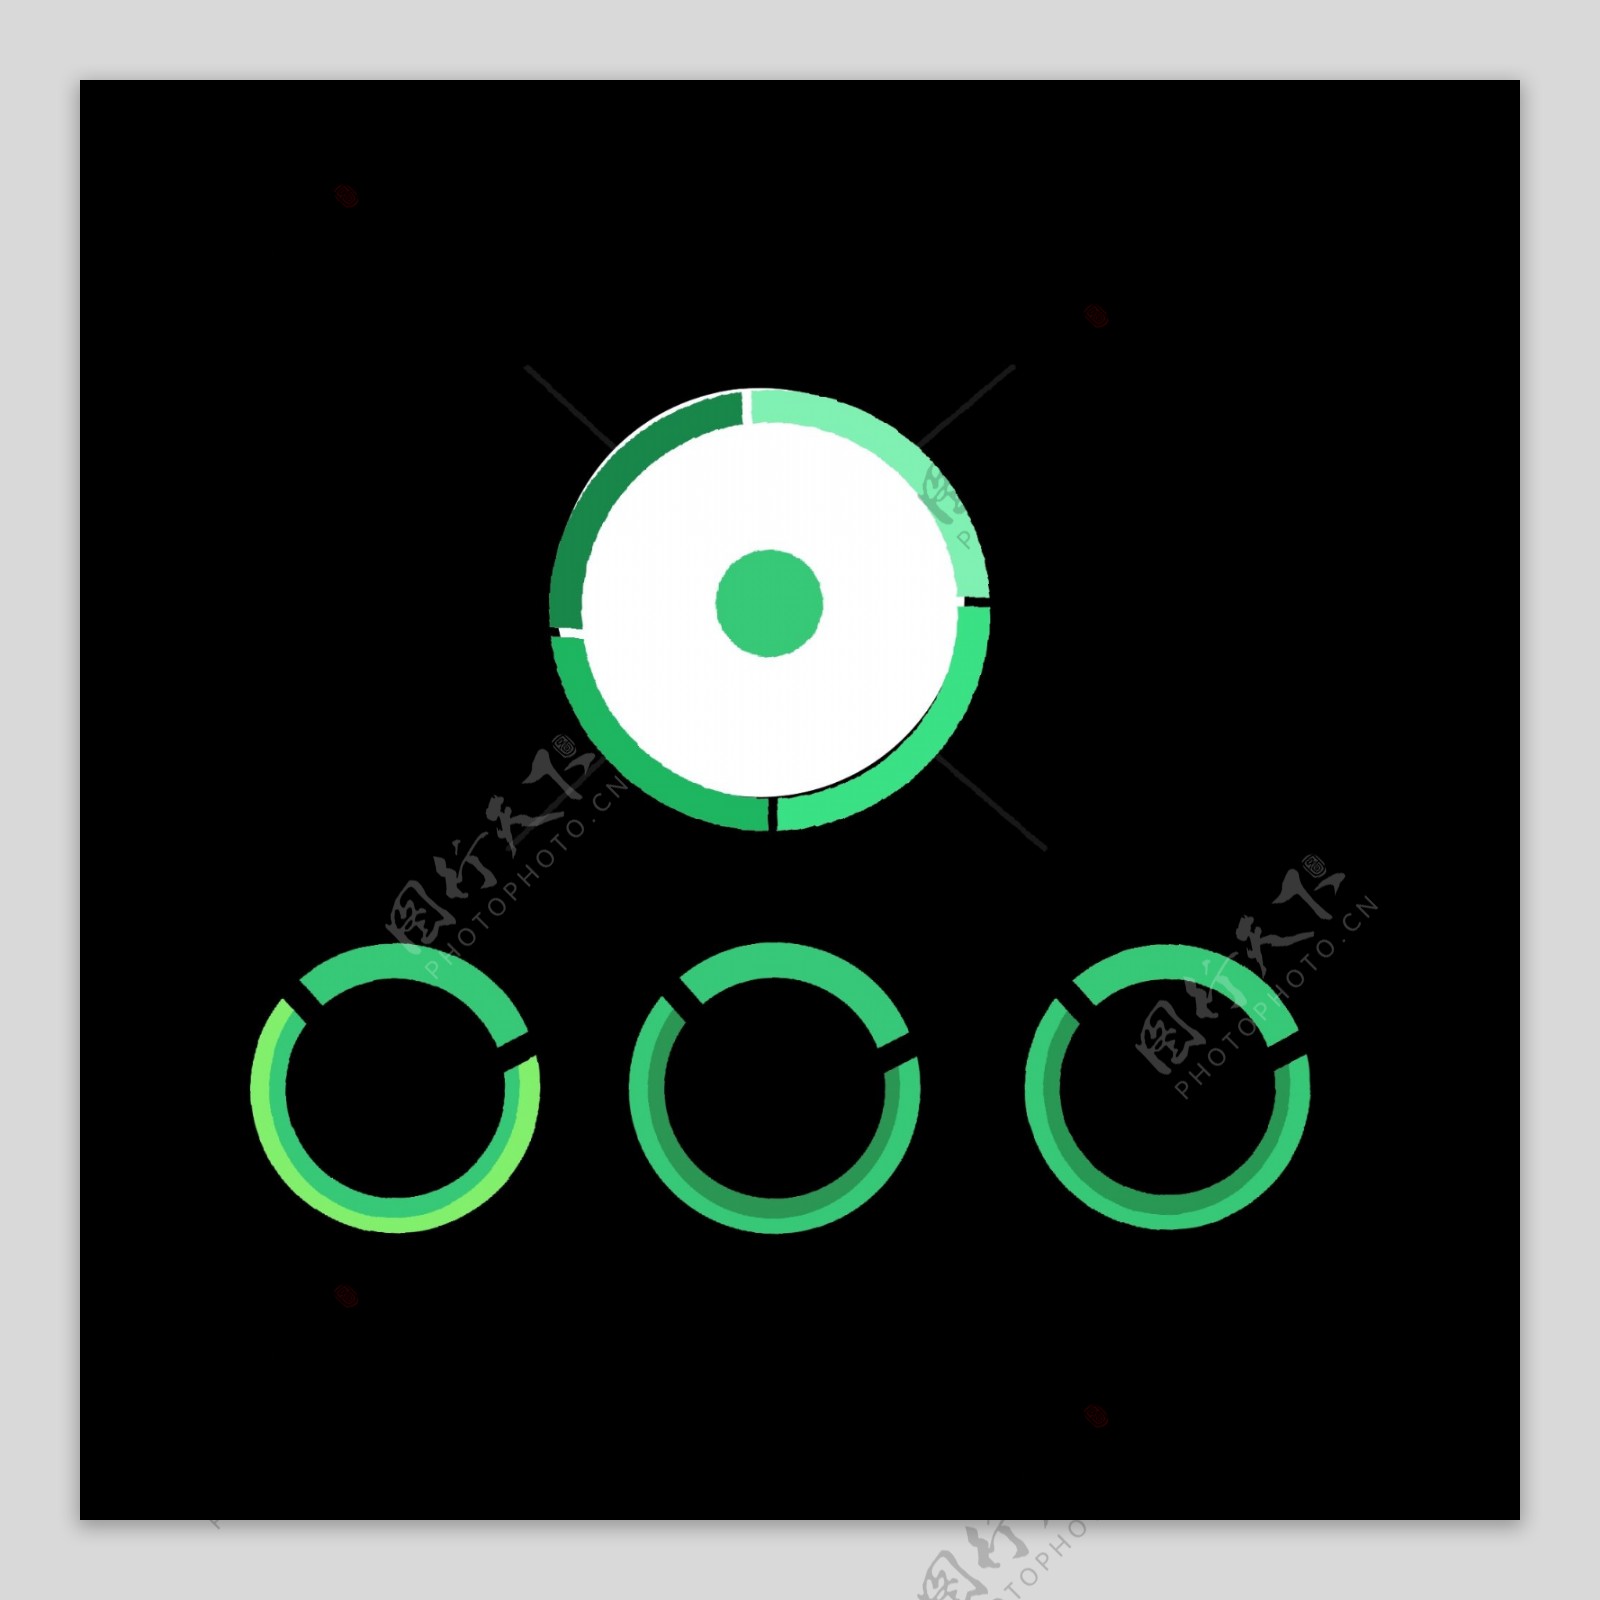 绿色圆形分类图标